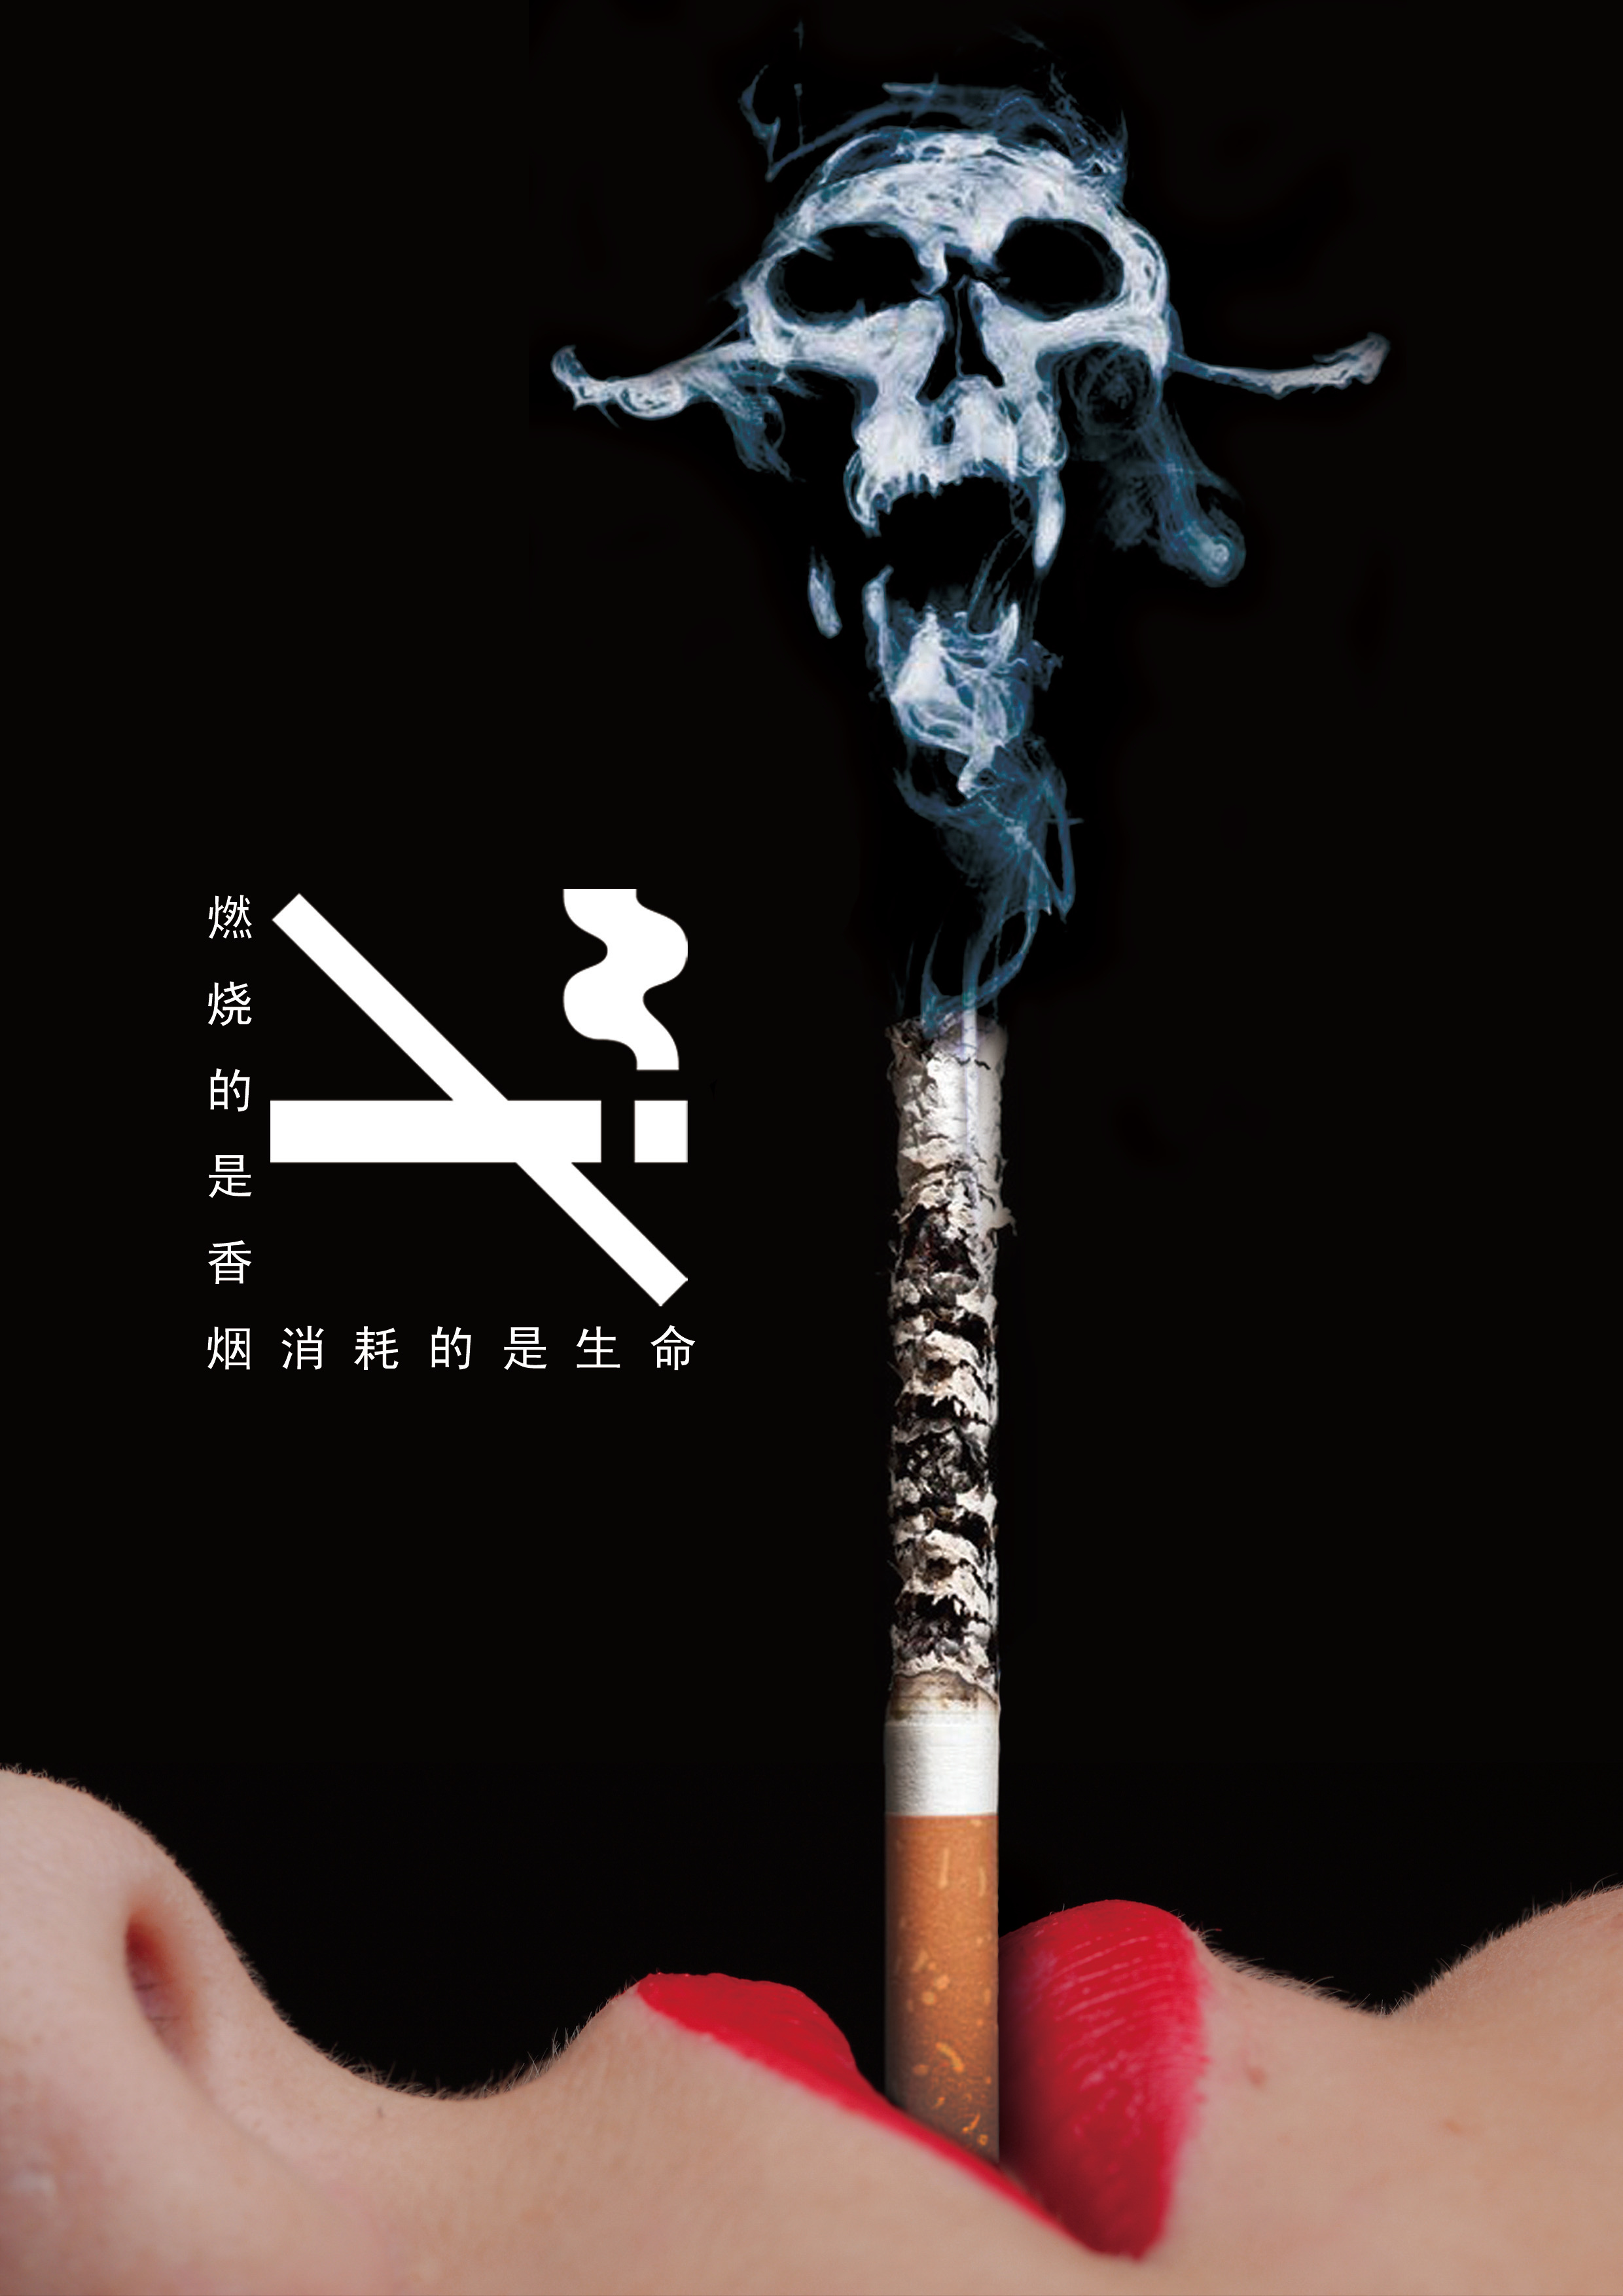 一支笔新品 - 香烟品鉴 - 烟悦网论坛